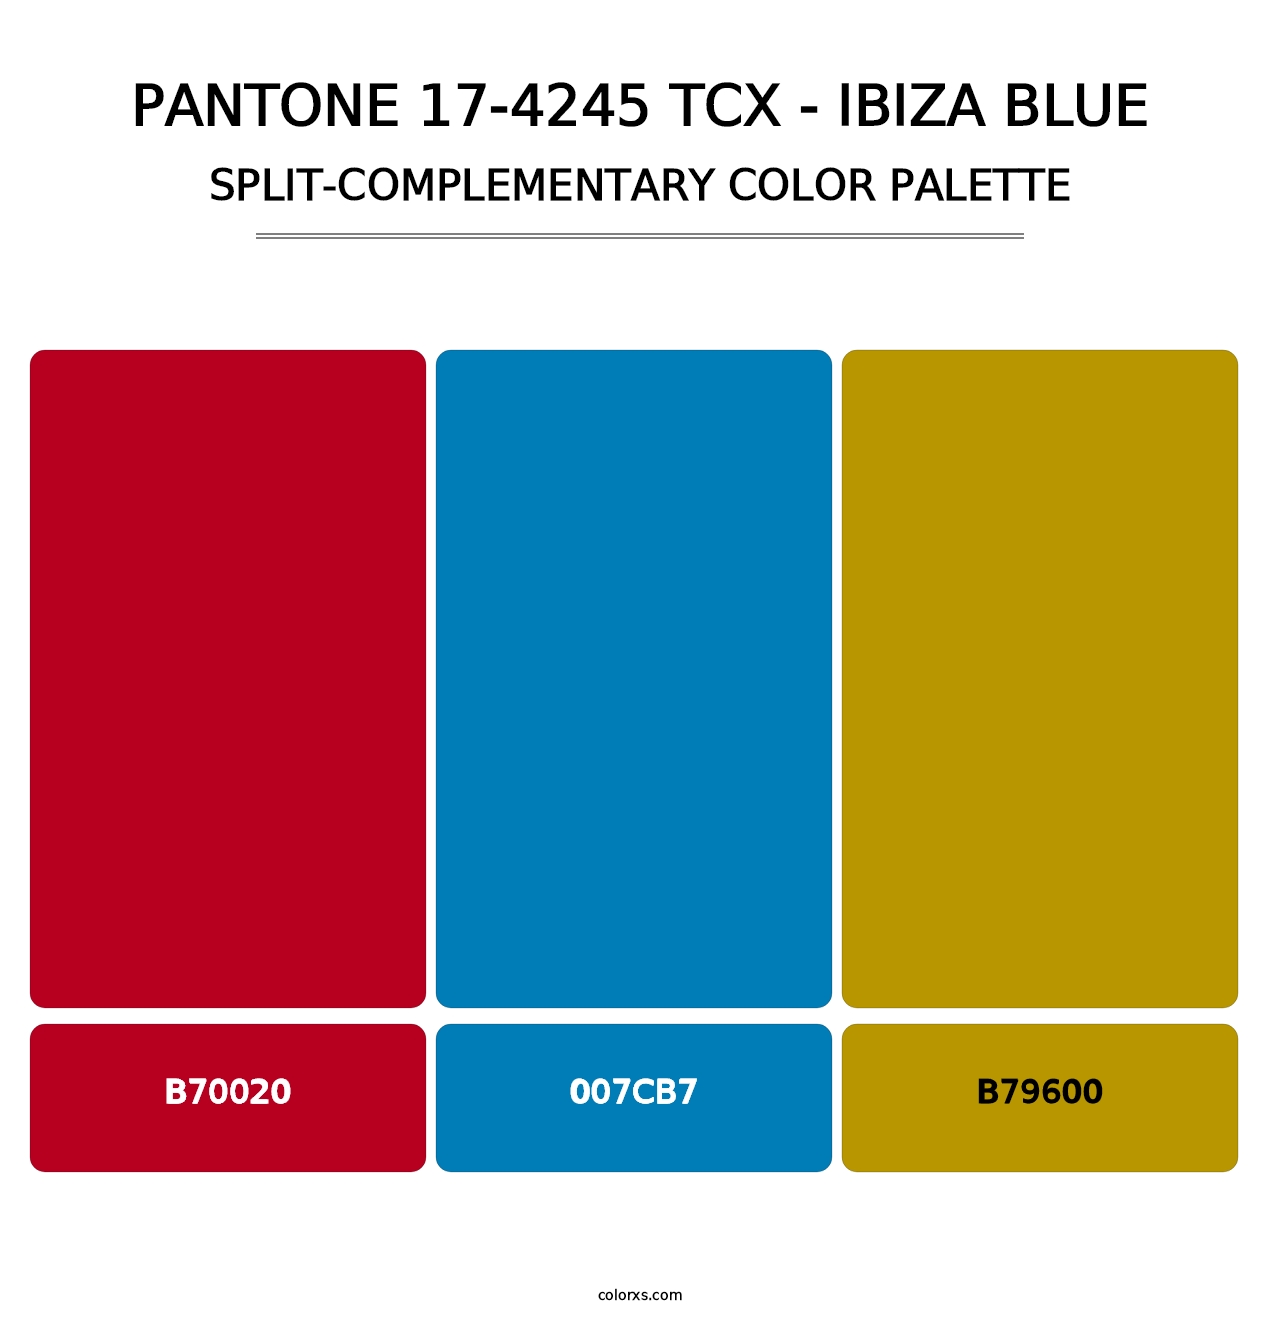 PANTONE 17-4245 TCX - Ibiza Blue - Split-Complementary Color Palette